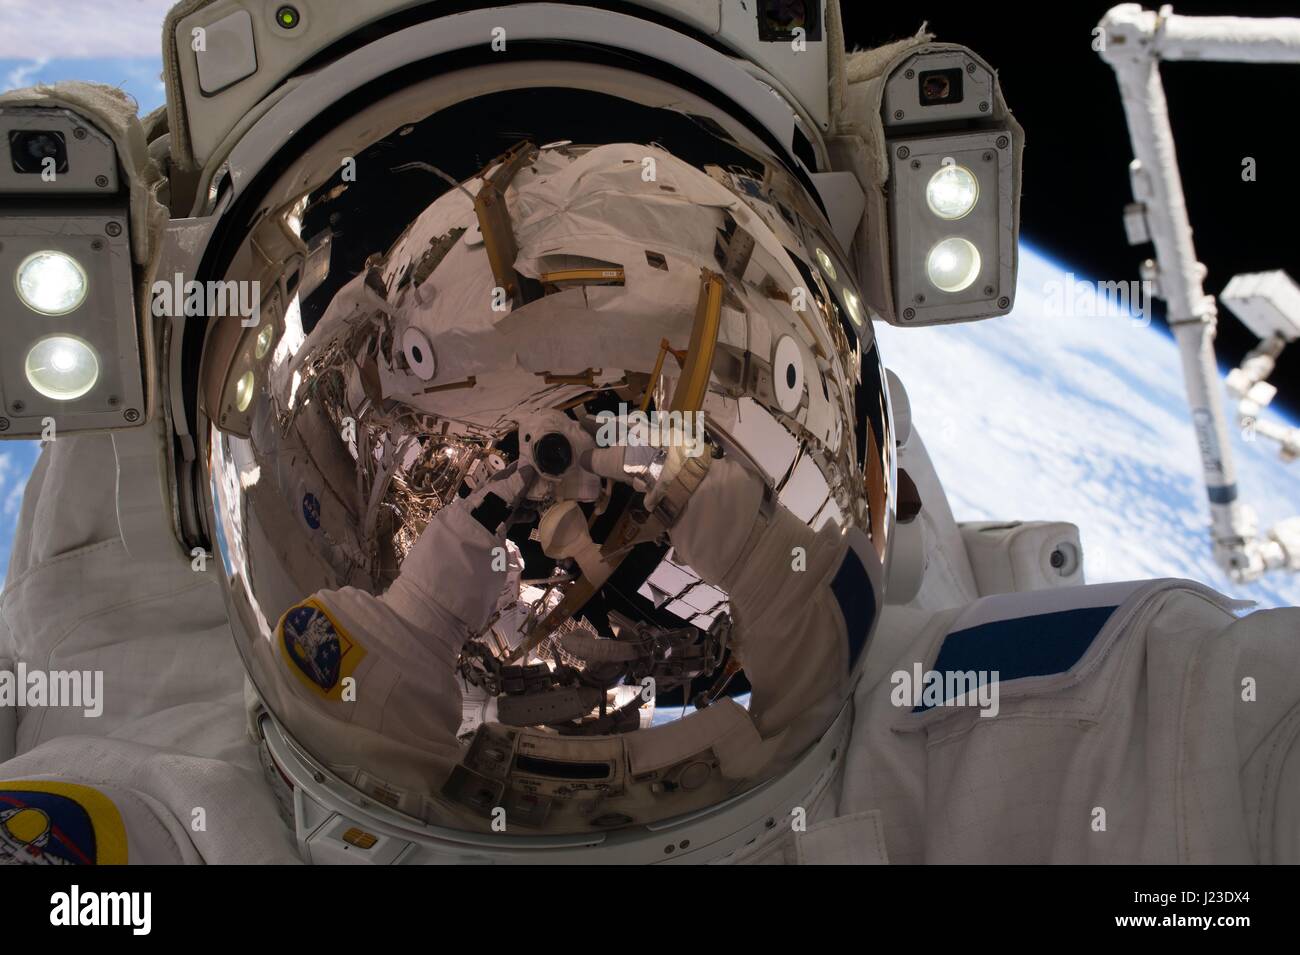 NASA-Expedition 50 erstklassige Crew Mitglied französischer Astronaut Thomas Pesquet von der European Space Agency arbeitet auf der internationalen Raumstation ISS während einem Weltraumspaziergang 13. Januar 2017 in der Erdumlaufbahn.    (Foto von der NASA über Planetpix) Stockfoto